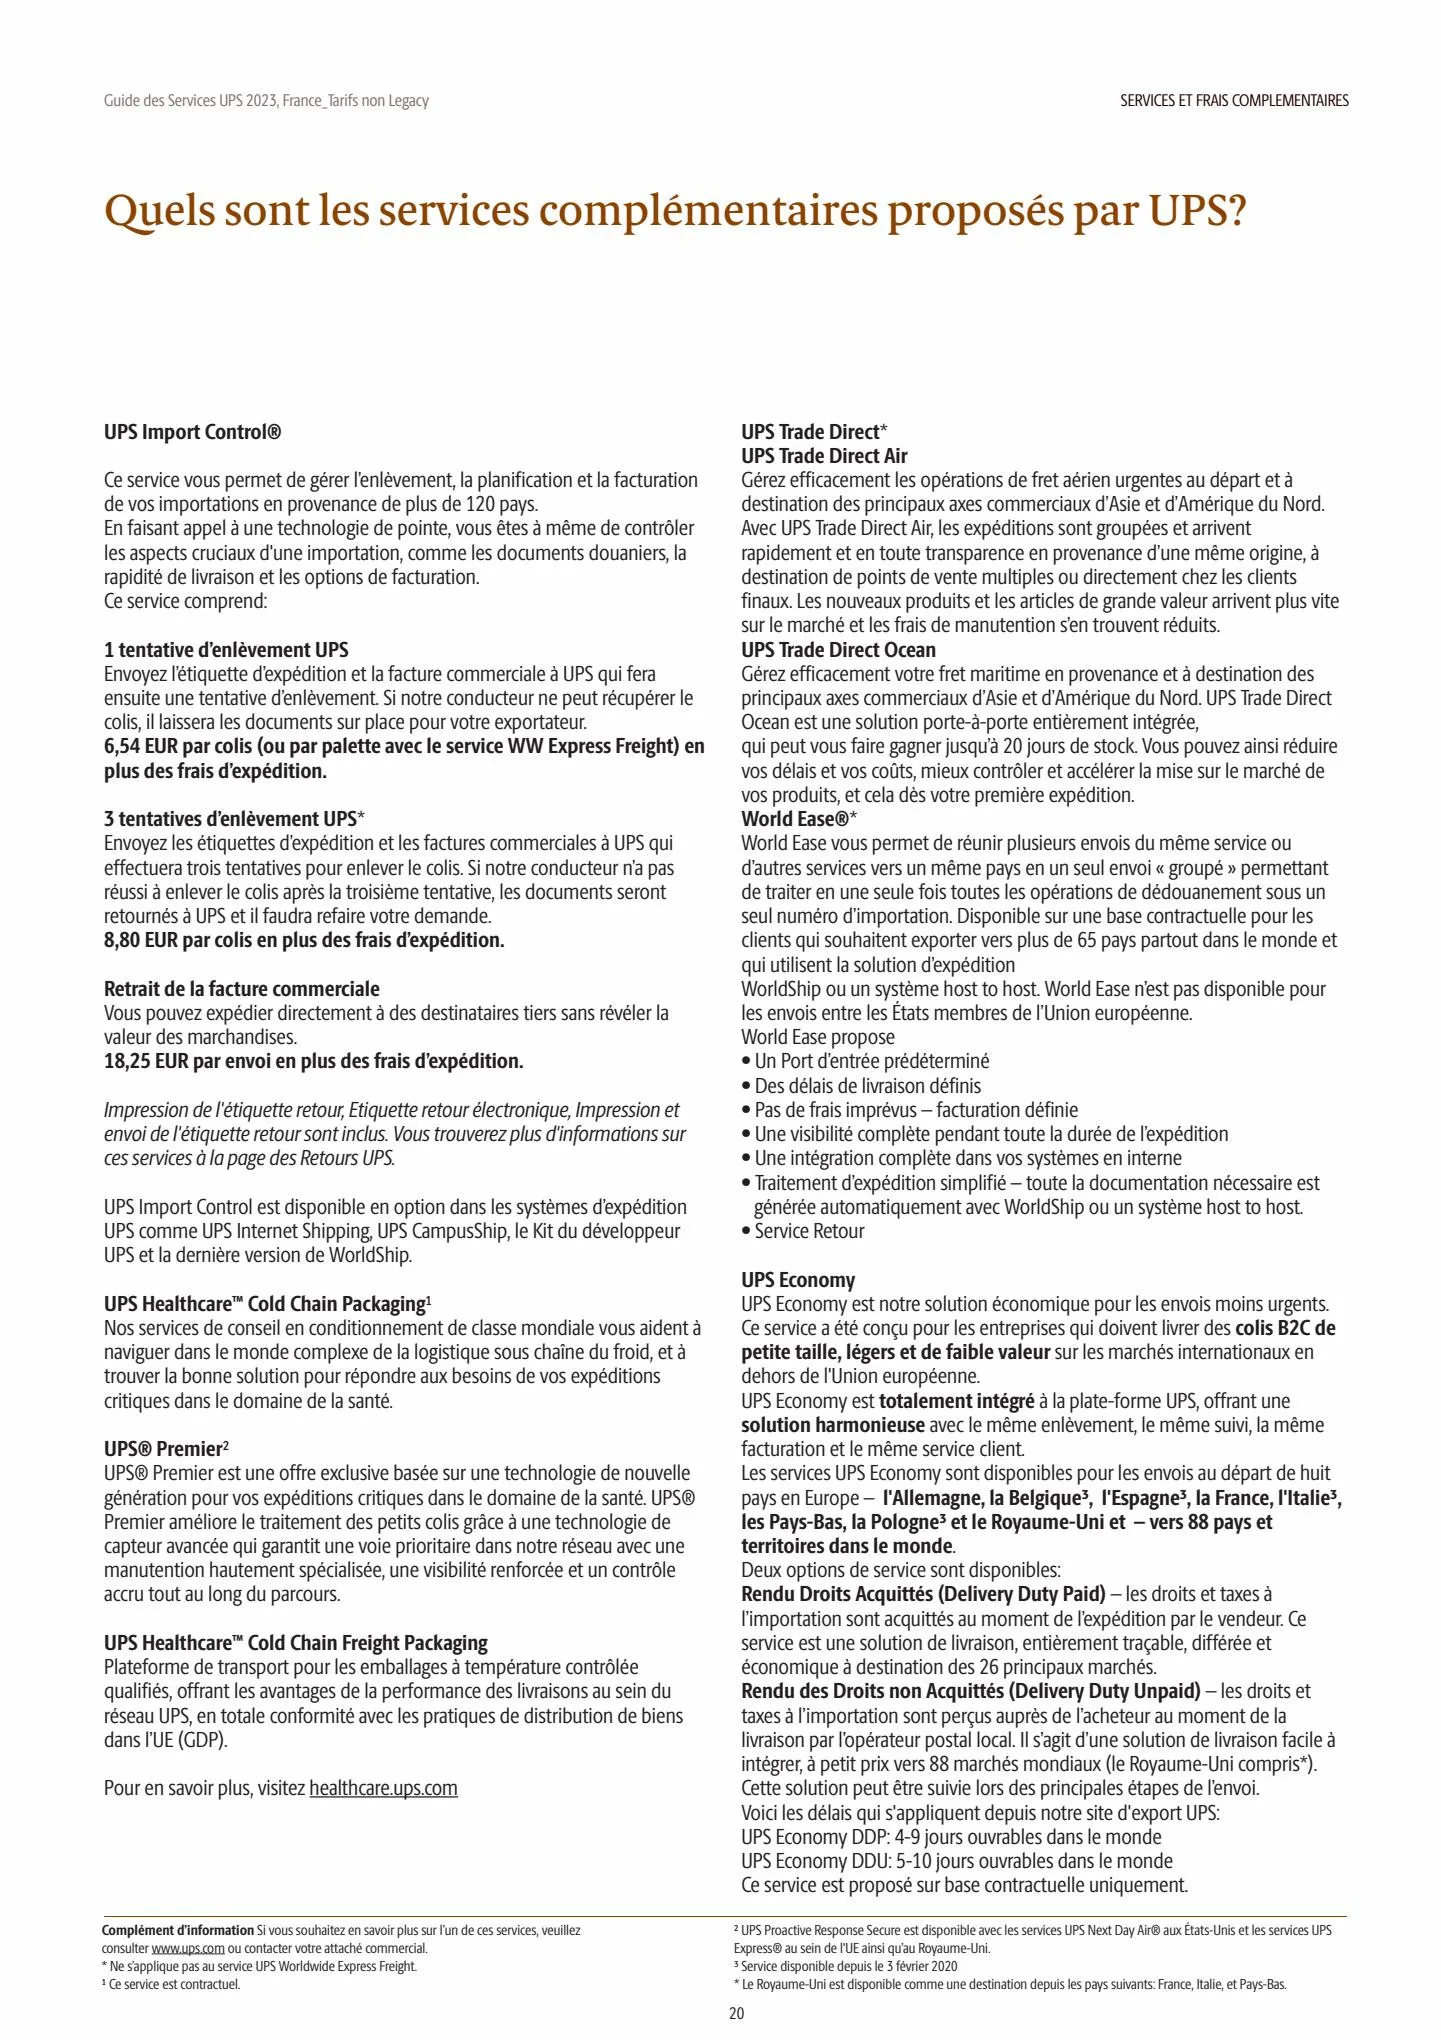 Catalogue Guide des Services 2023, page 00020